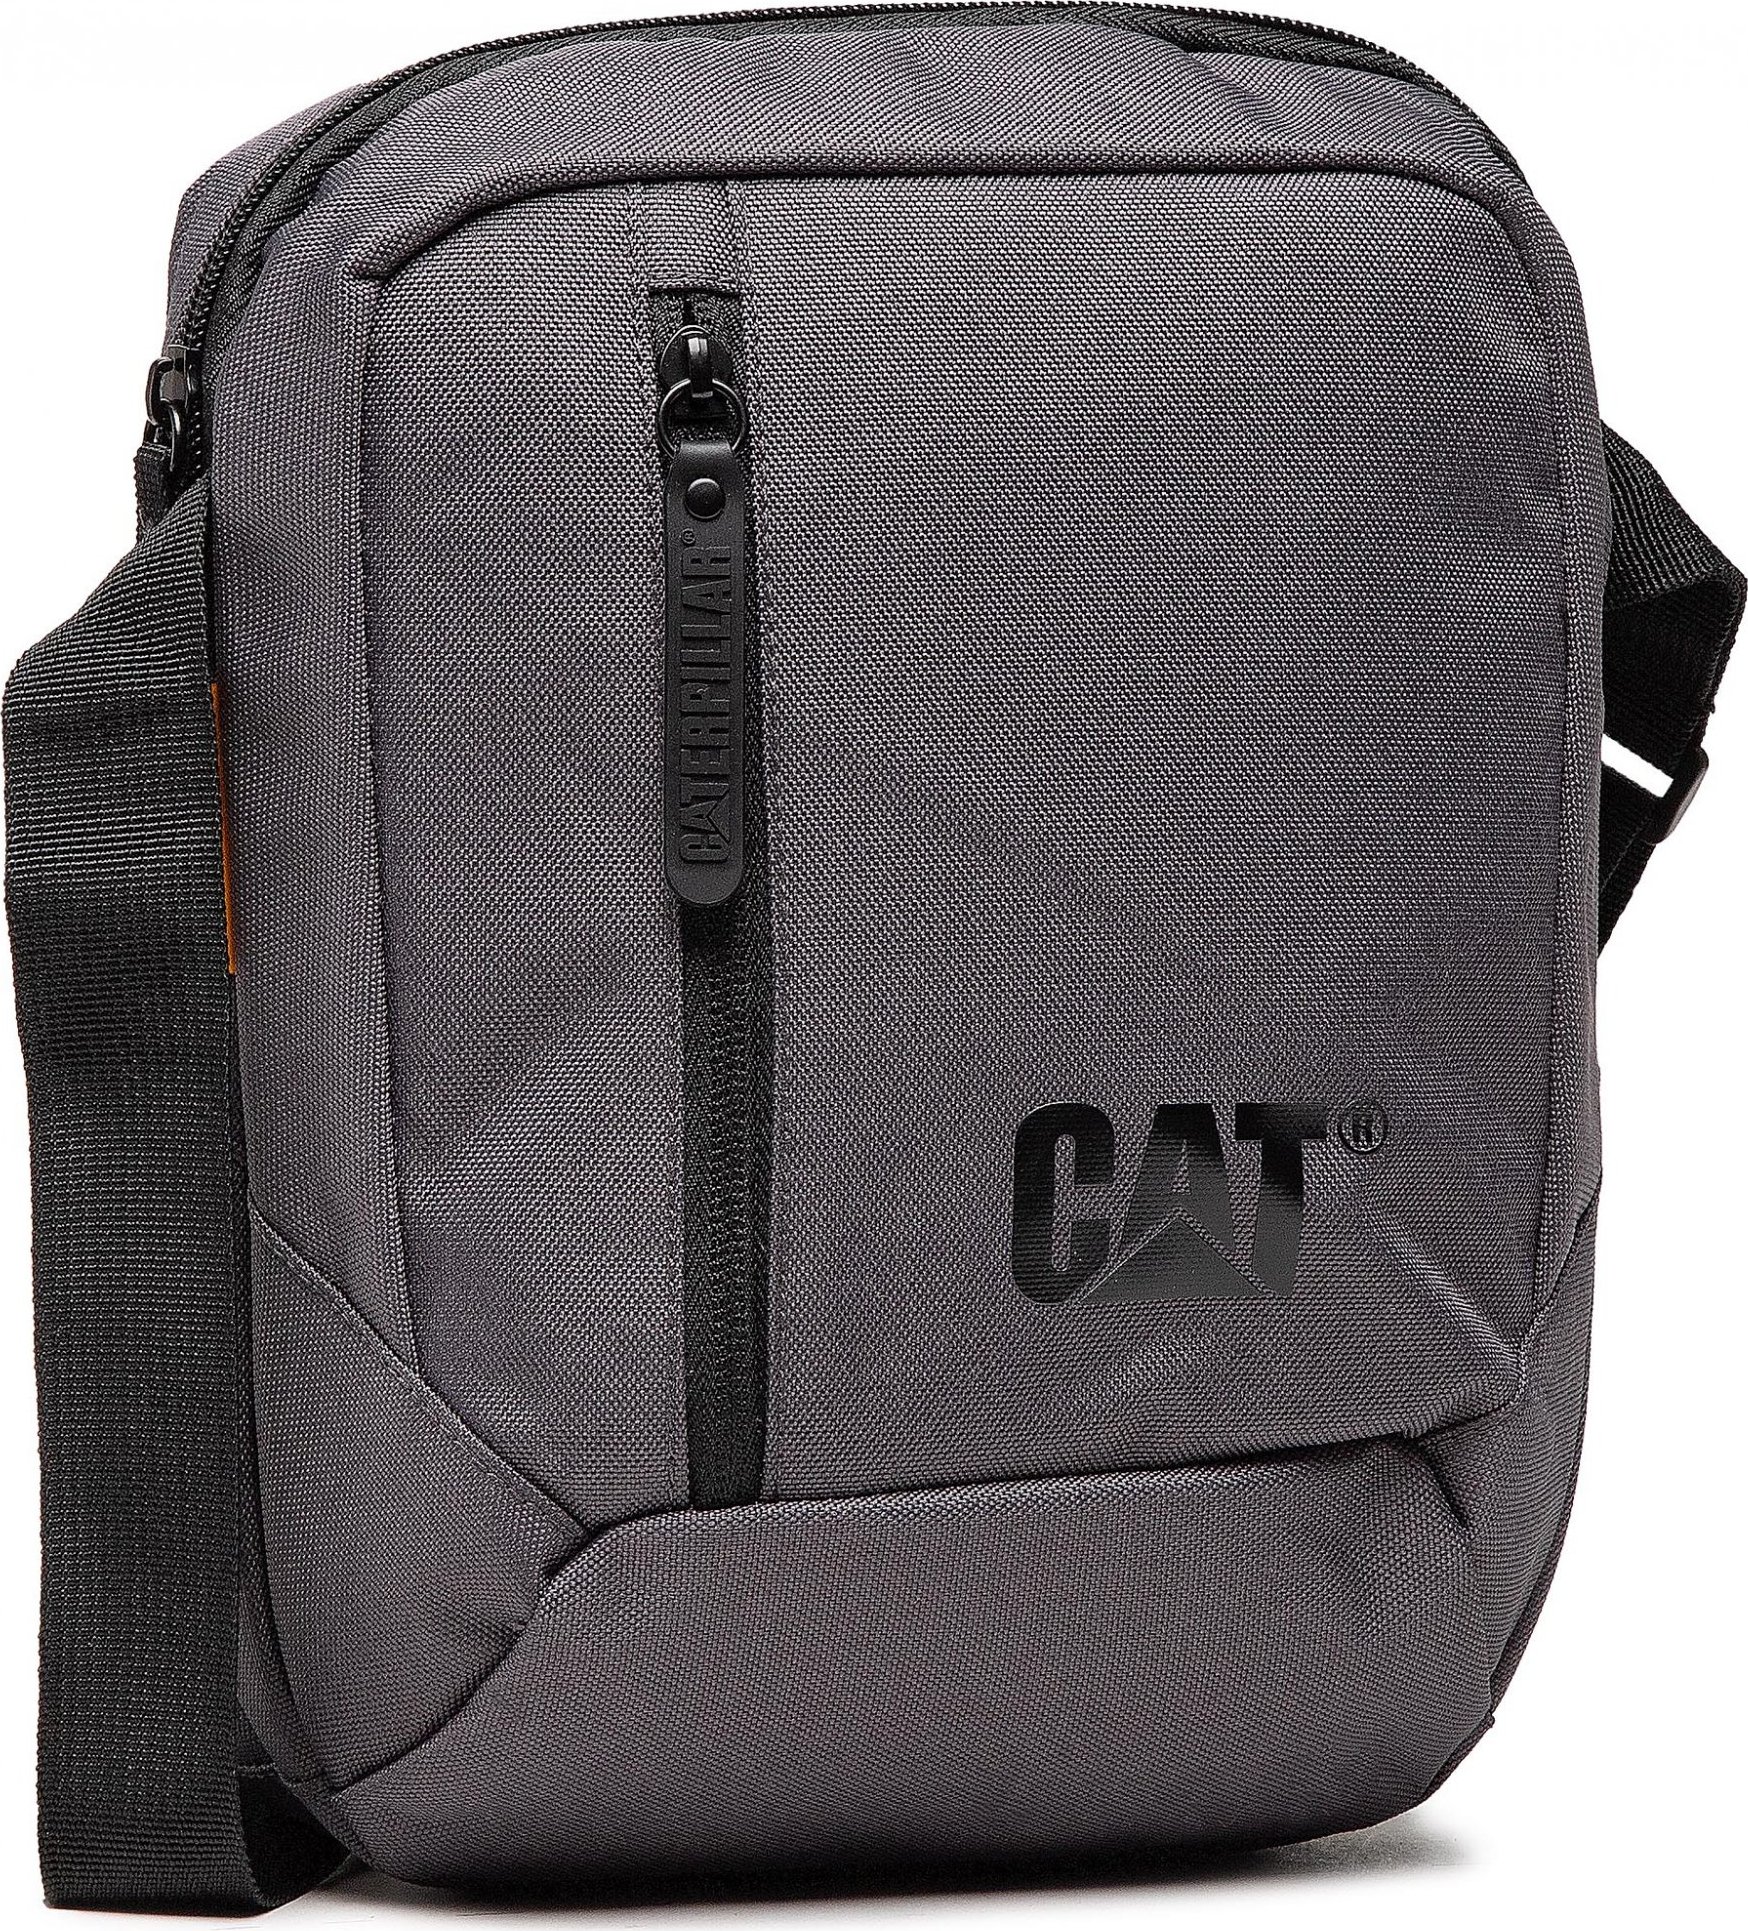 CATerpillar Tablet Bag 83614-483